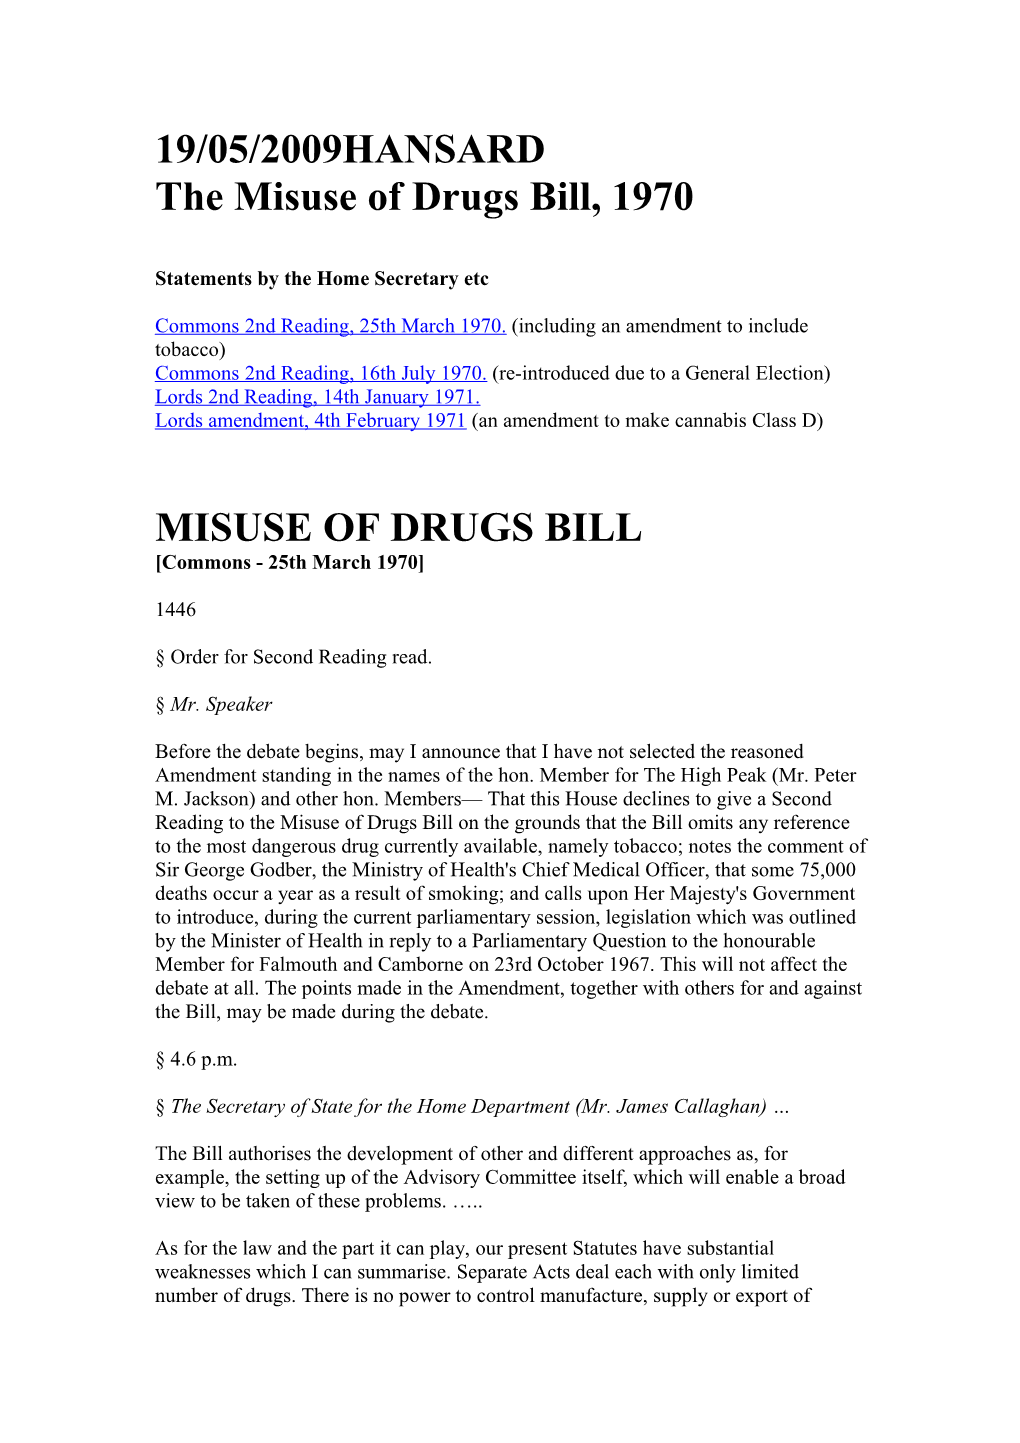 HANSARD the Misuse of Drugs Bill, 1970